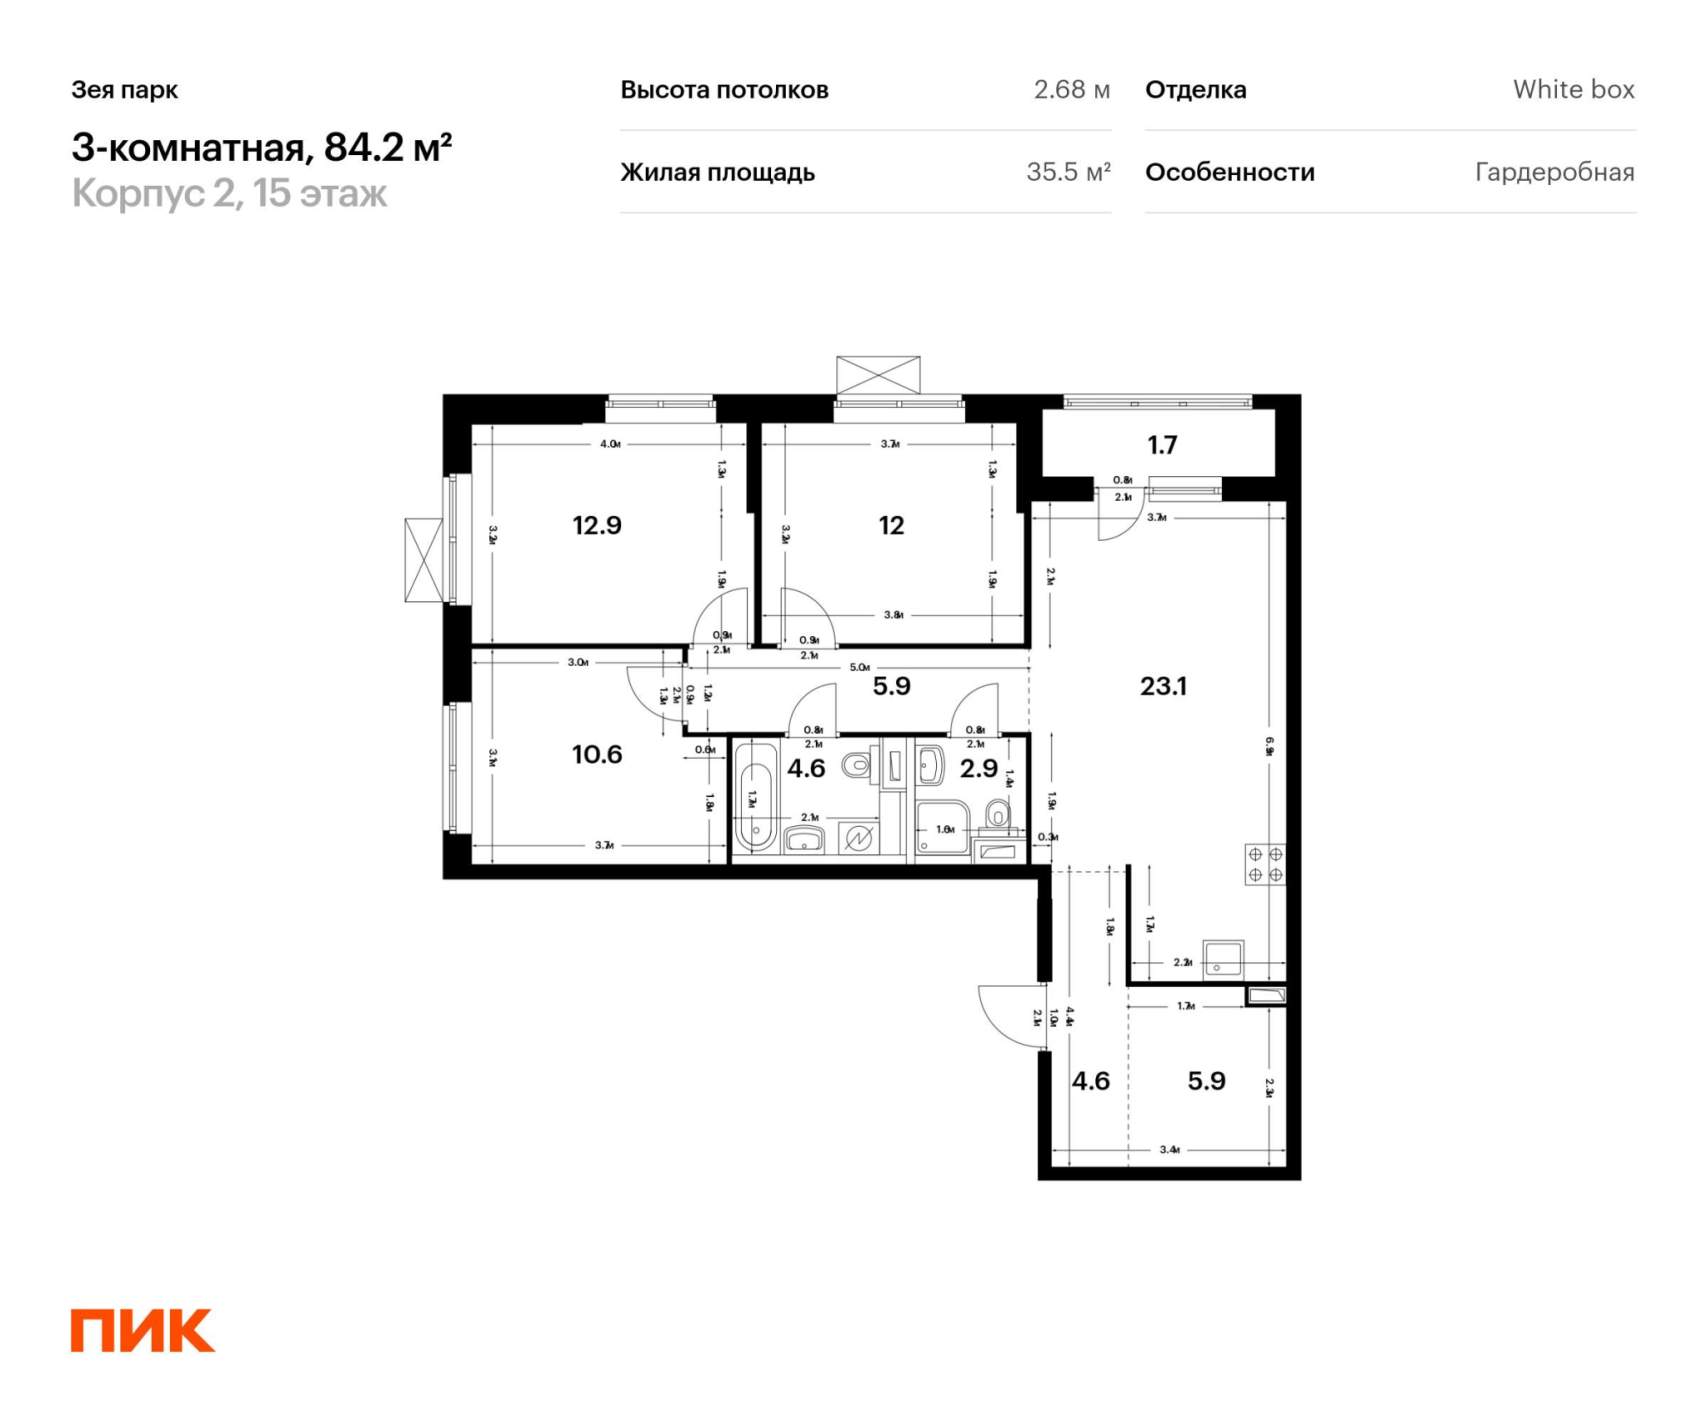 Продам трехкомнатную квартиру в новостройке 84.2 м.кв.